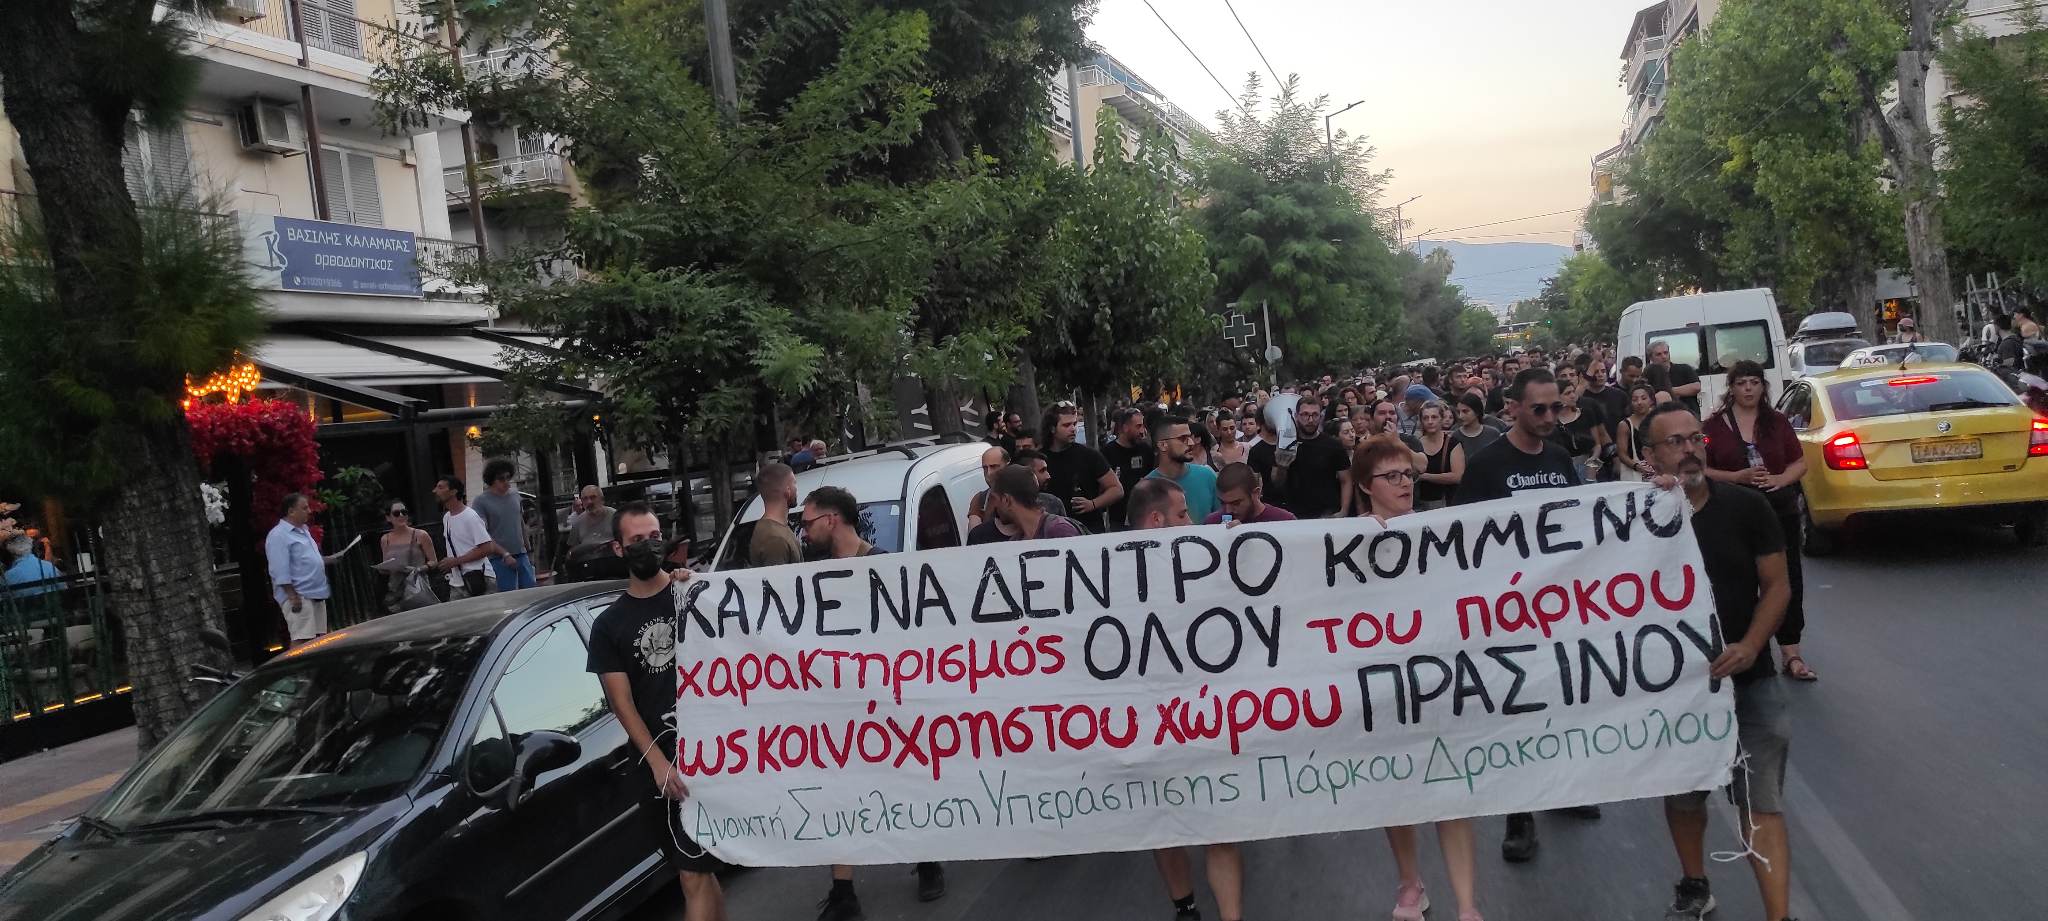 Ενταση στη διαμαρτυρία για το Πάρκο Δρακοπούλου - Μία σύλληψη